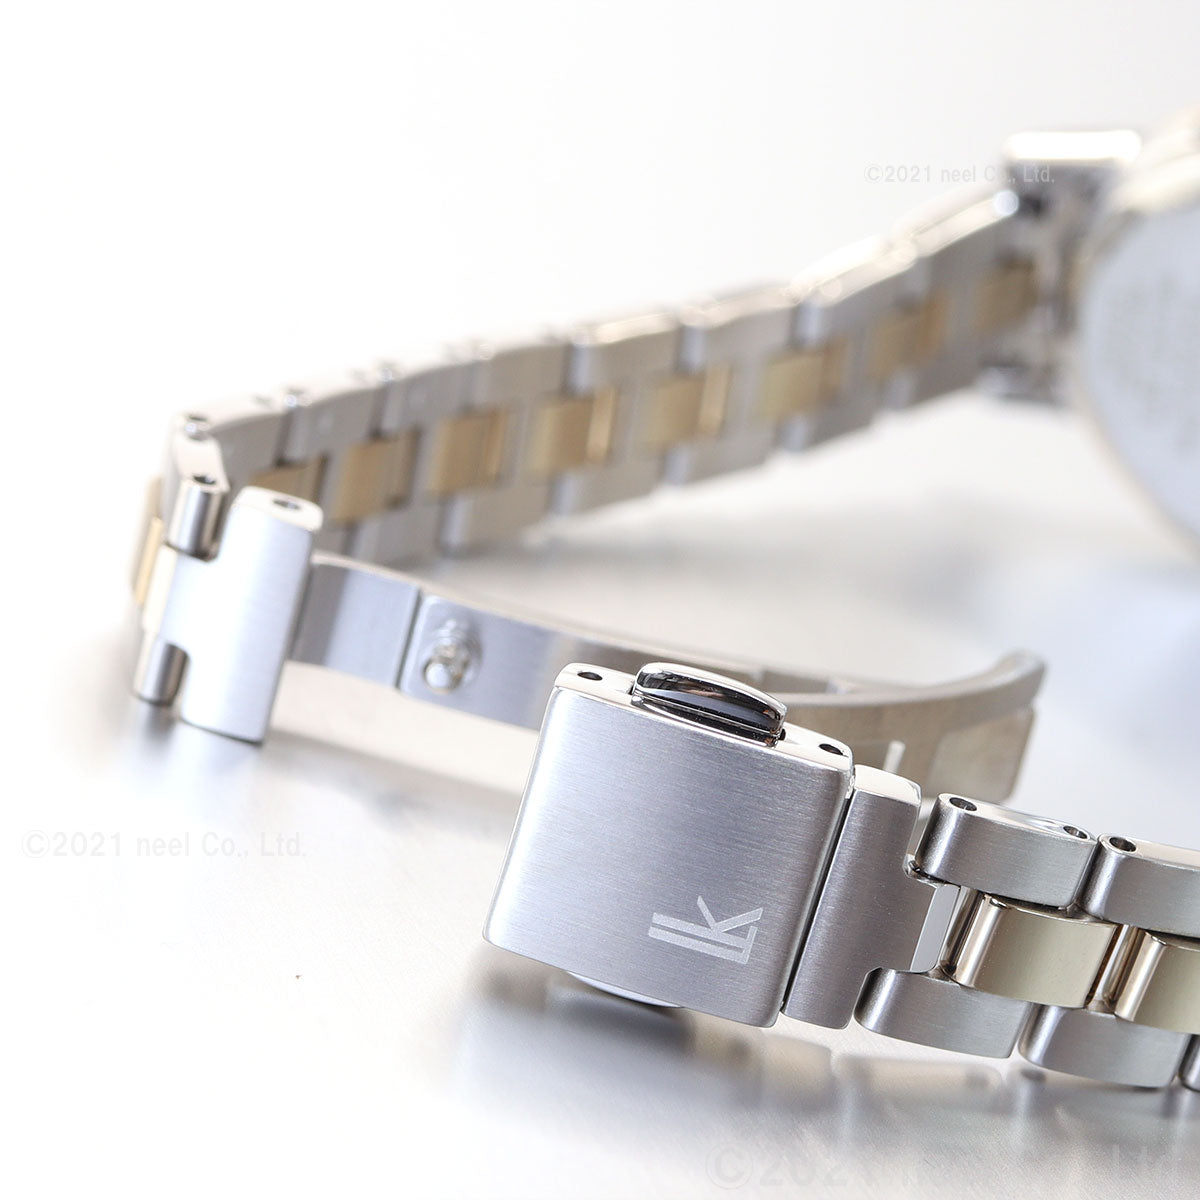 セイコー ルキア SSVV076 スタンダードコレクション ティアドロップ レディース 腕時計 ソーラー電波 ホワイトダイヤル SEIKO LUKIA